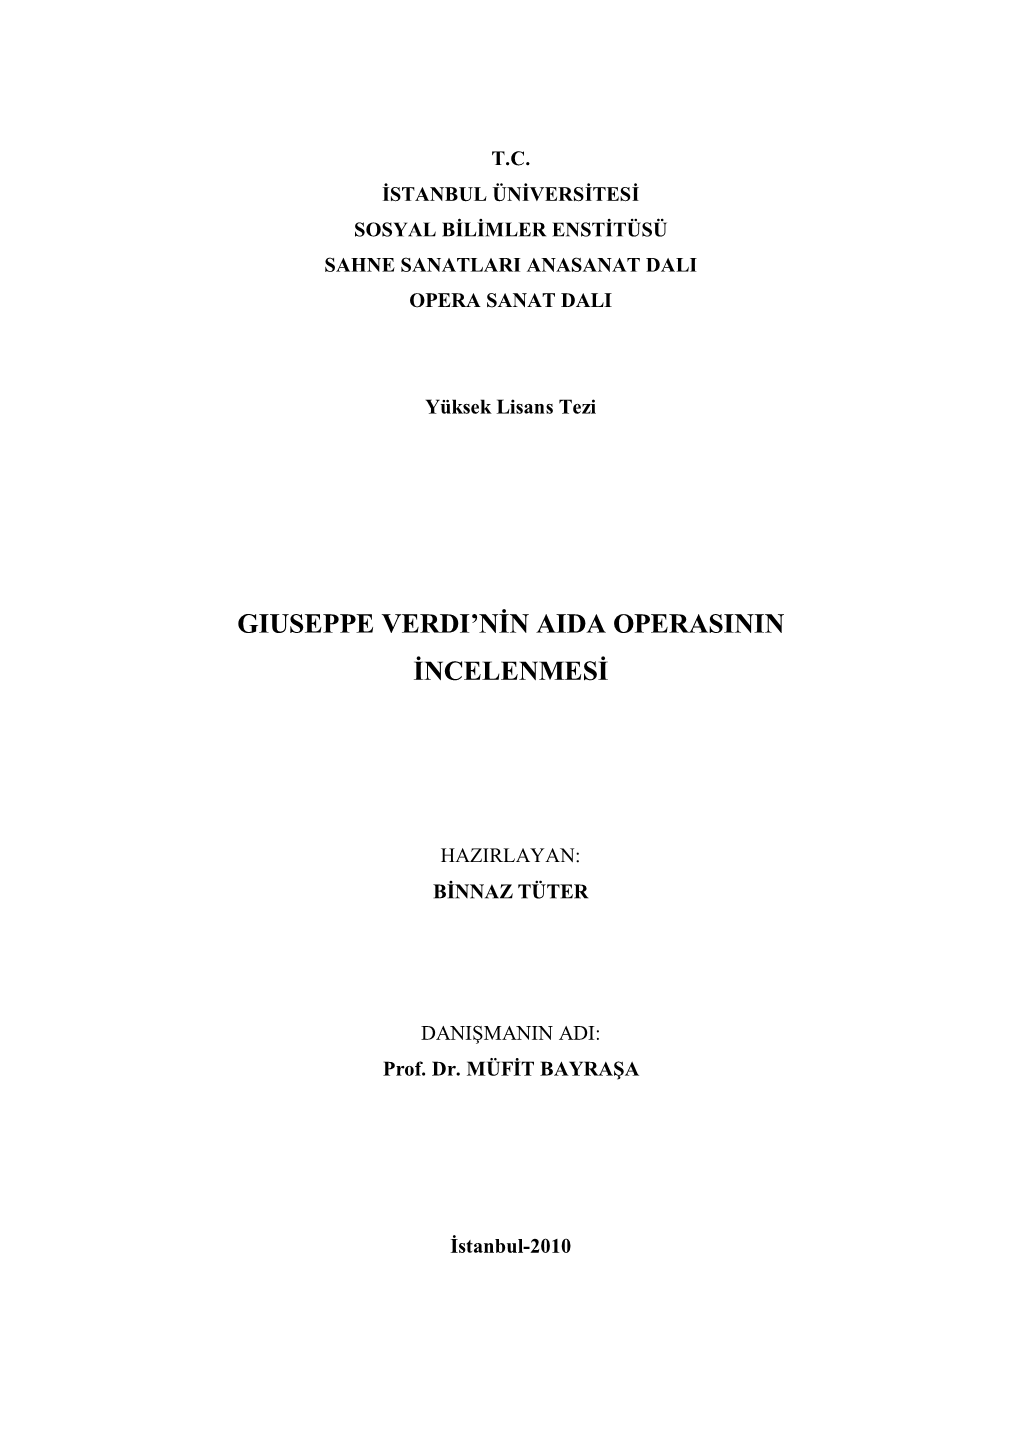 Giuseppe Verdi'nin Aida Operasinin Incelenmesi